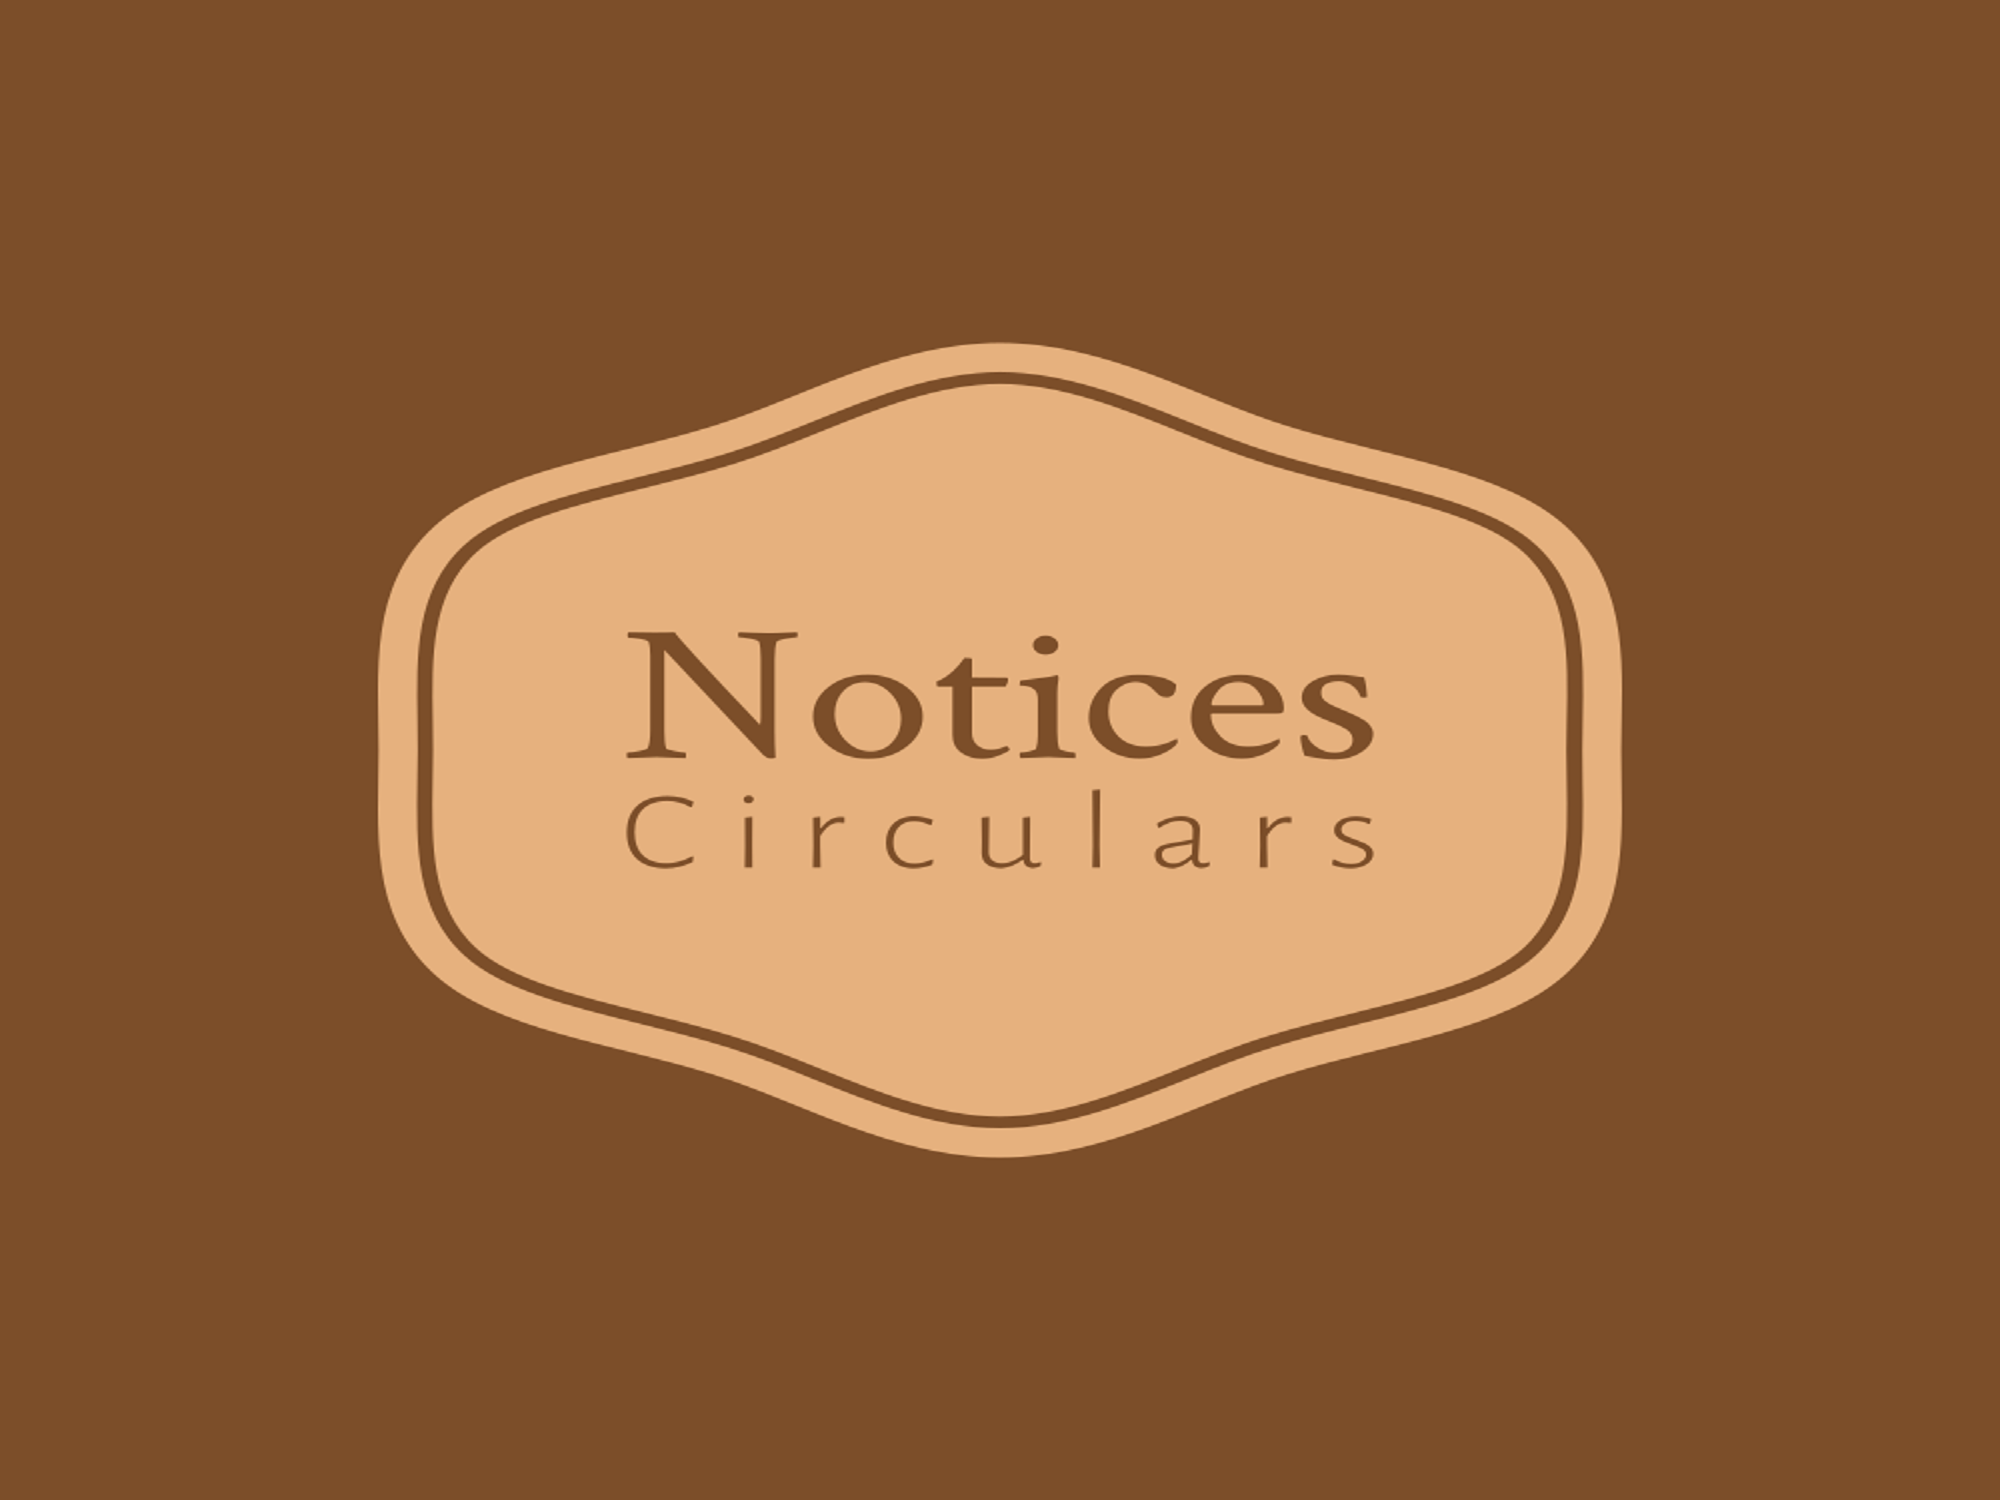 Notices Circulars